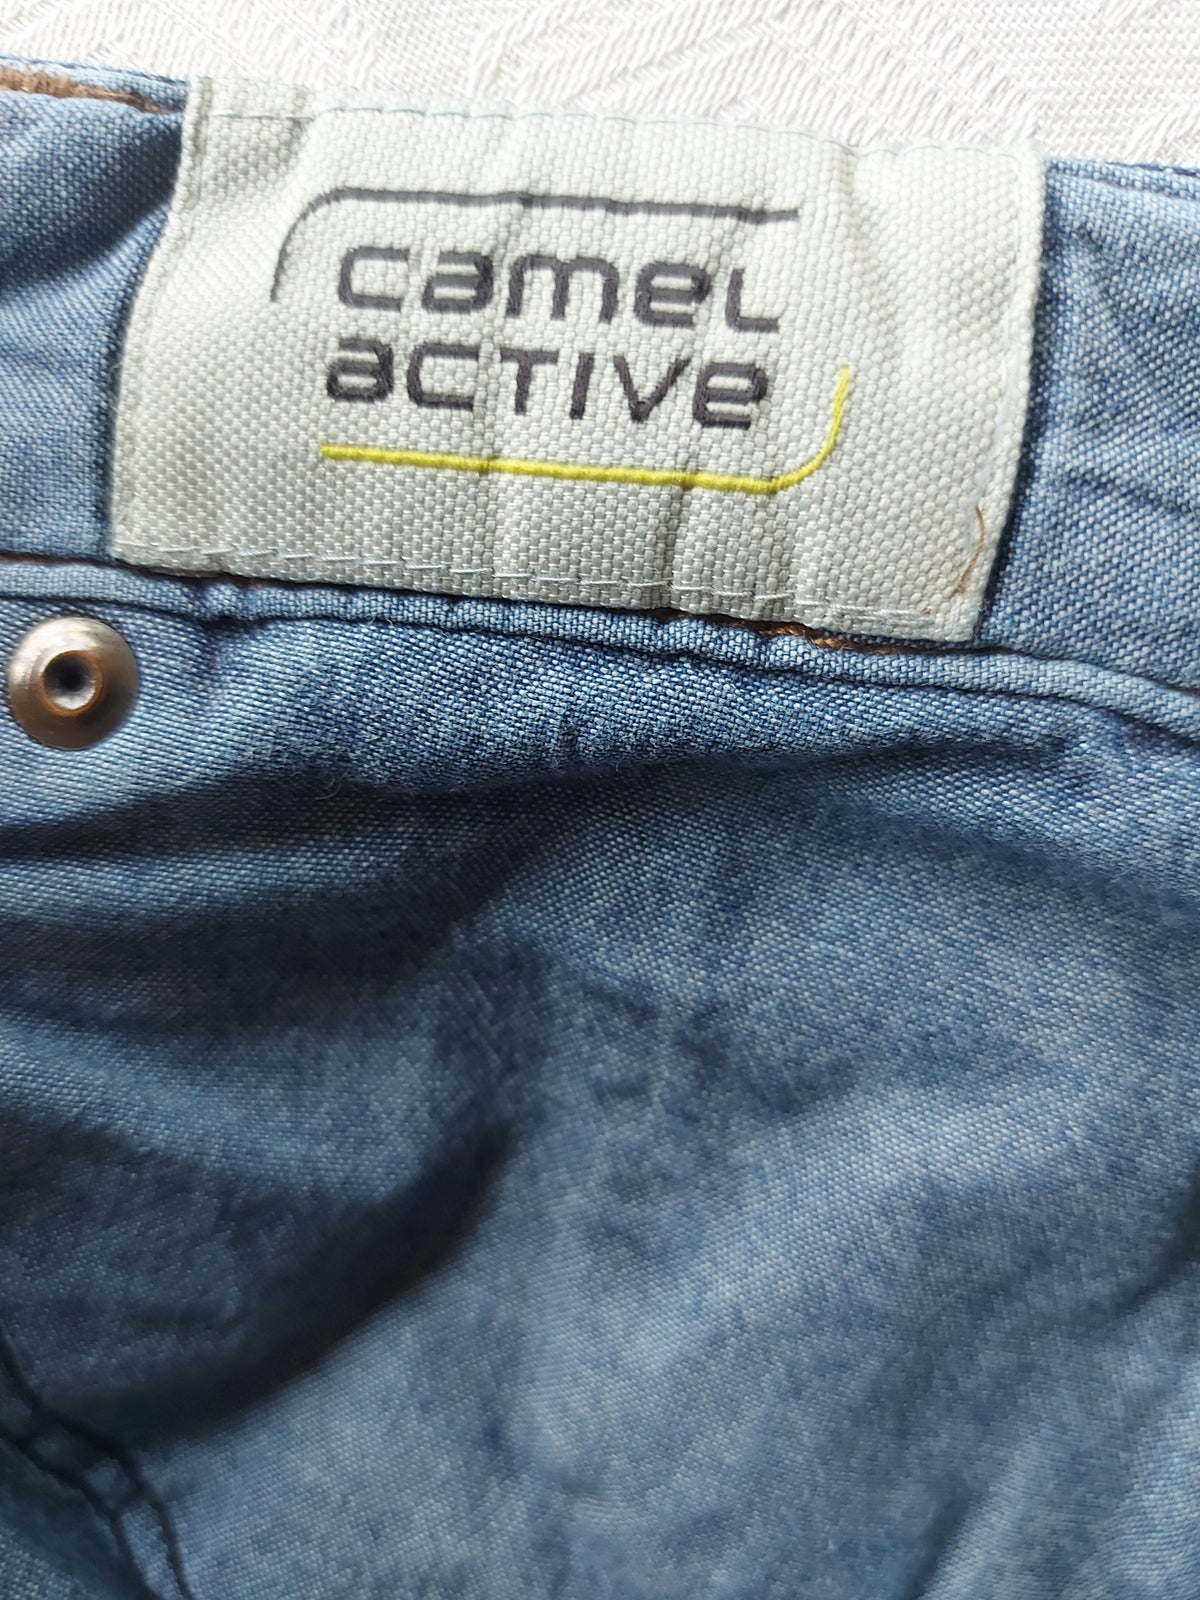 Jeans, Camel Active, str. 38